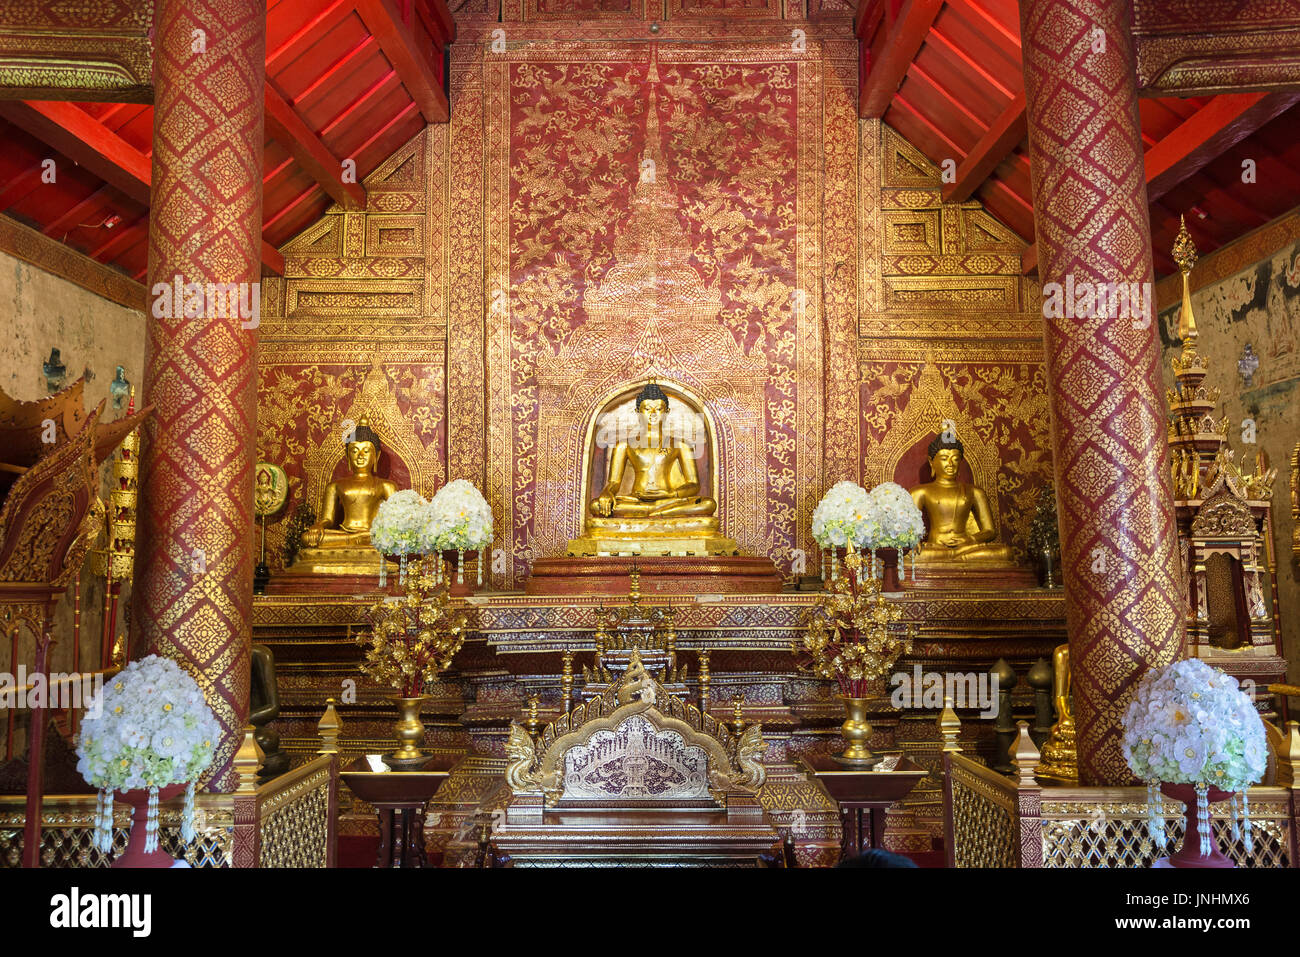 Intérieur de Wat Phra Singh, un temple bouddhiste à Chiang Mai, dans le Nord de la Thaïlande et Phra Buddha Sihing, la plus importante statue de Bouddha de Chiang Mai. Banque D'Images